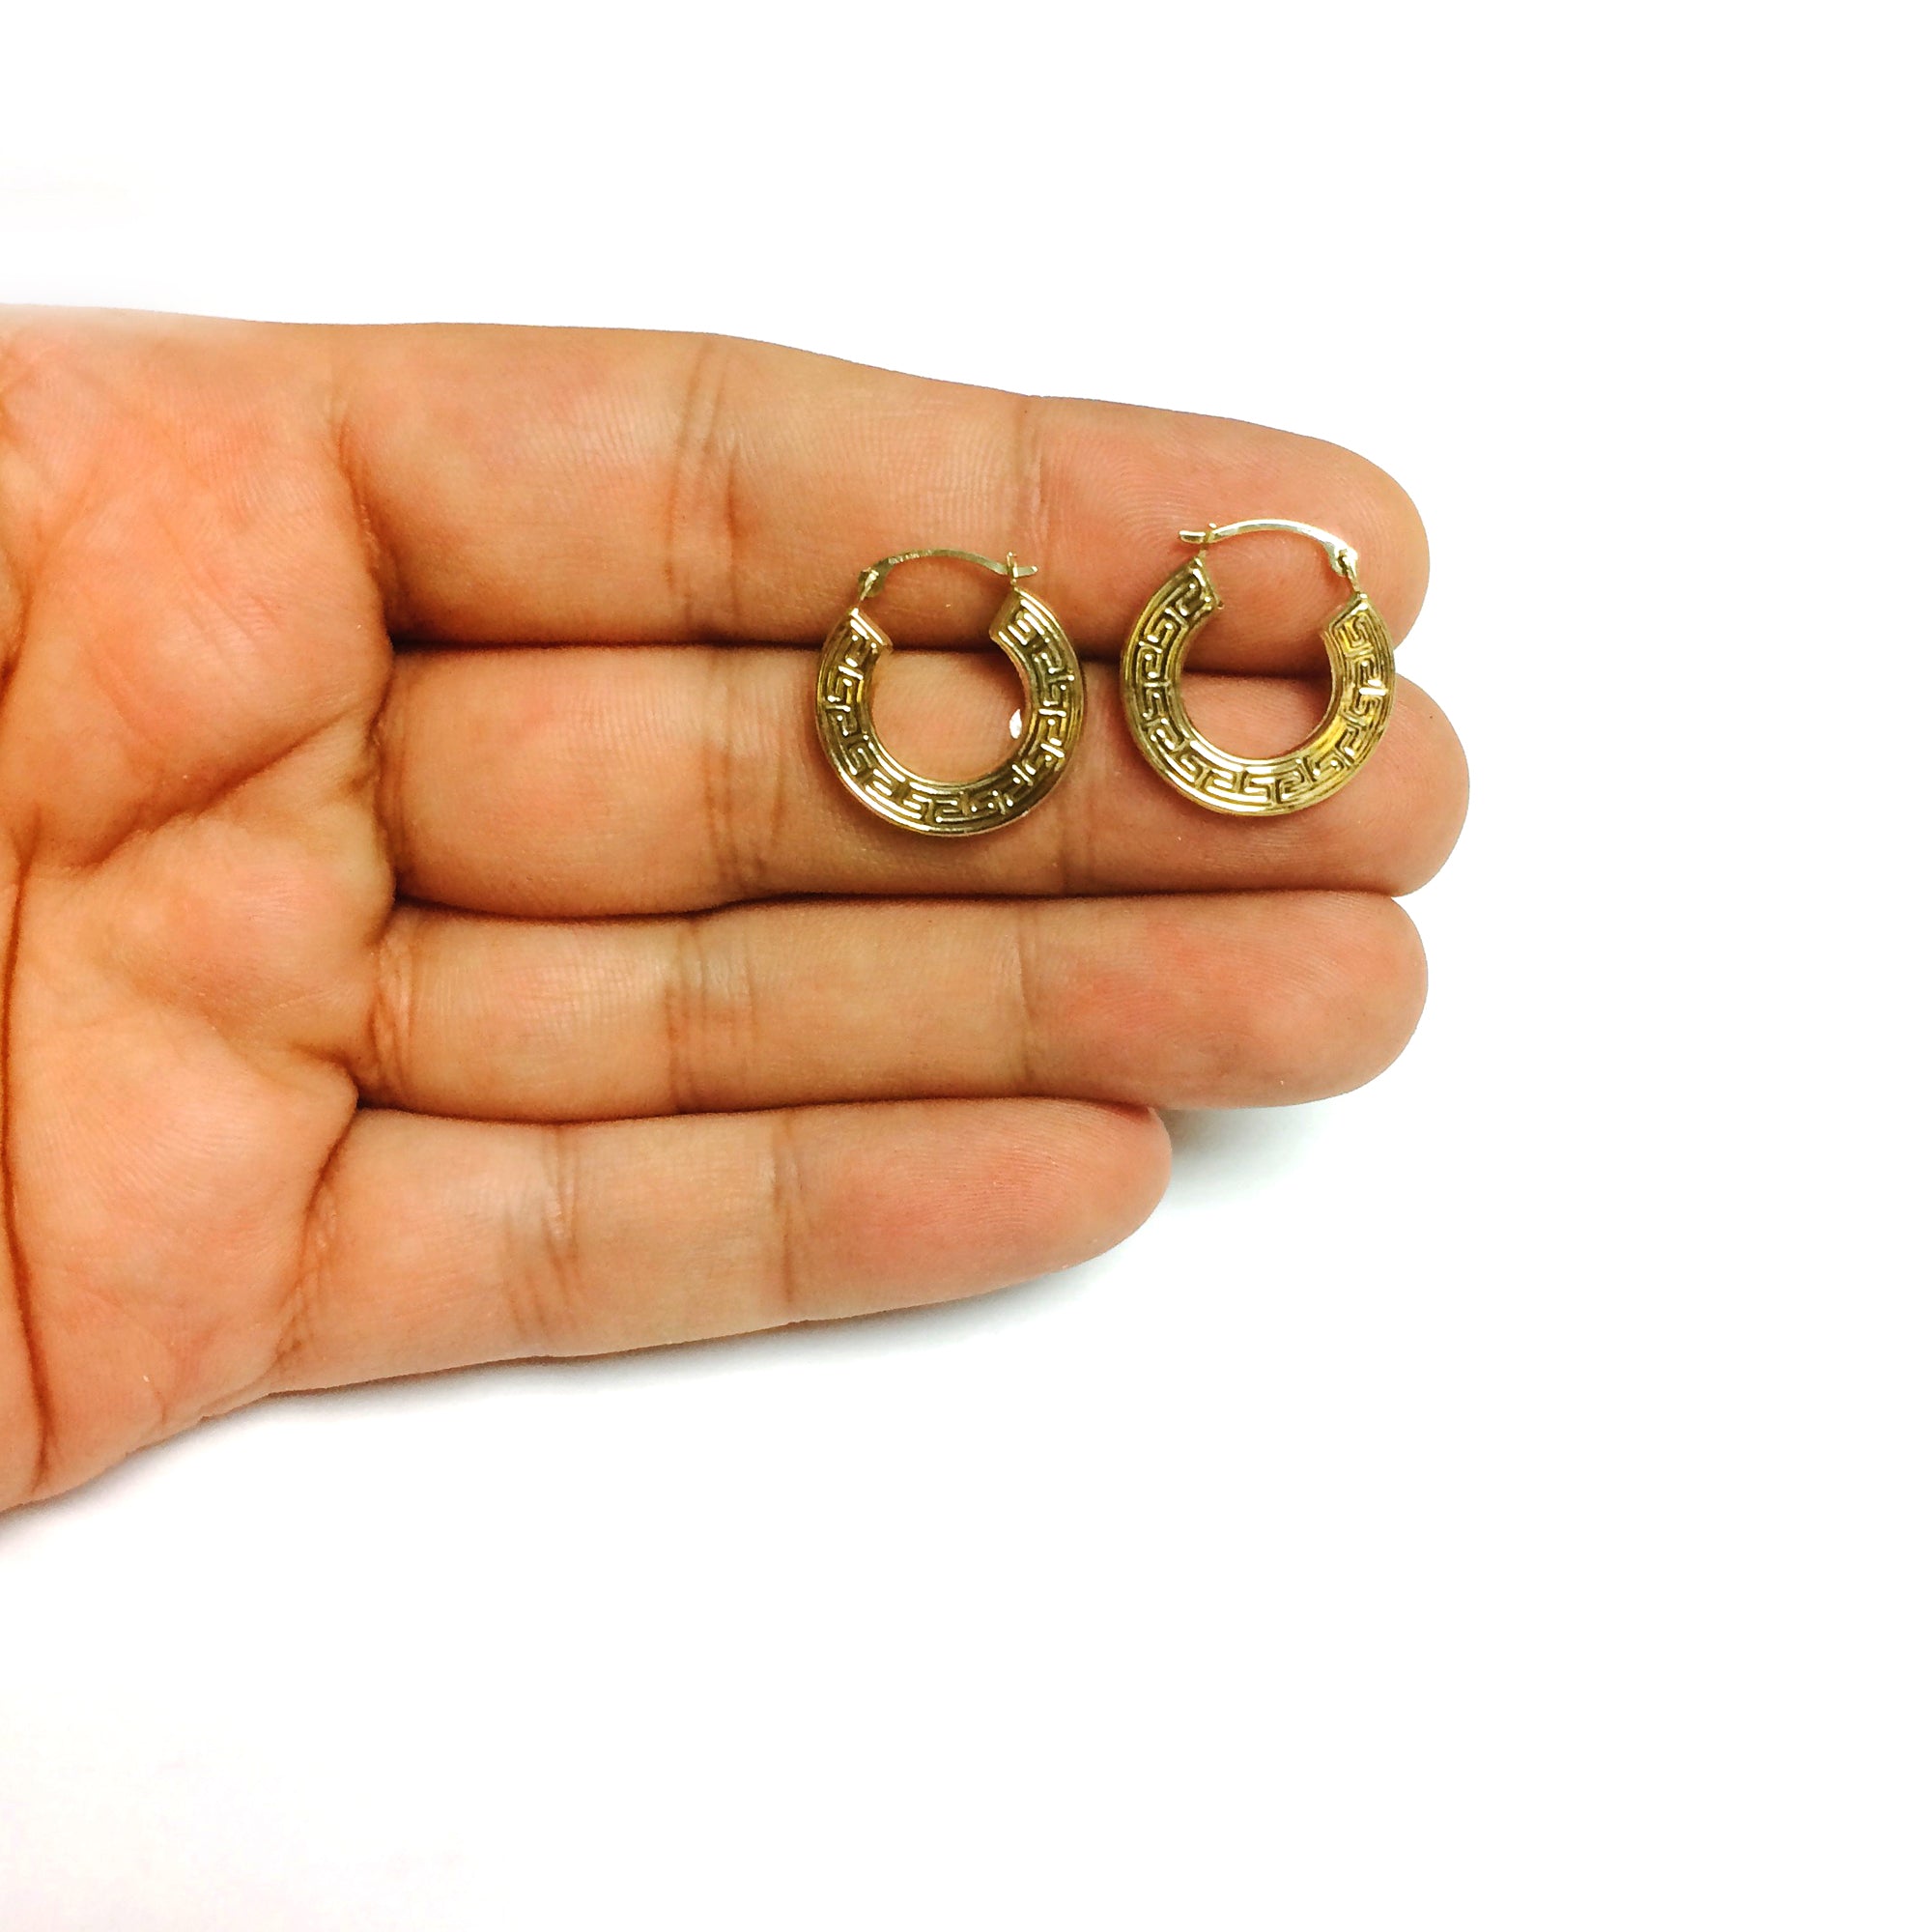 10k Yellow Gold Greek Key Pattern Round Hoop Earrings , Diameter 18mm fine designer jewelry for men and women